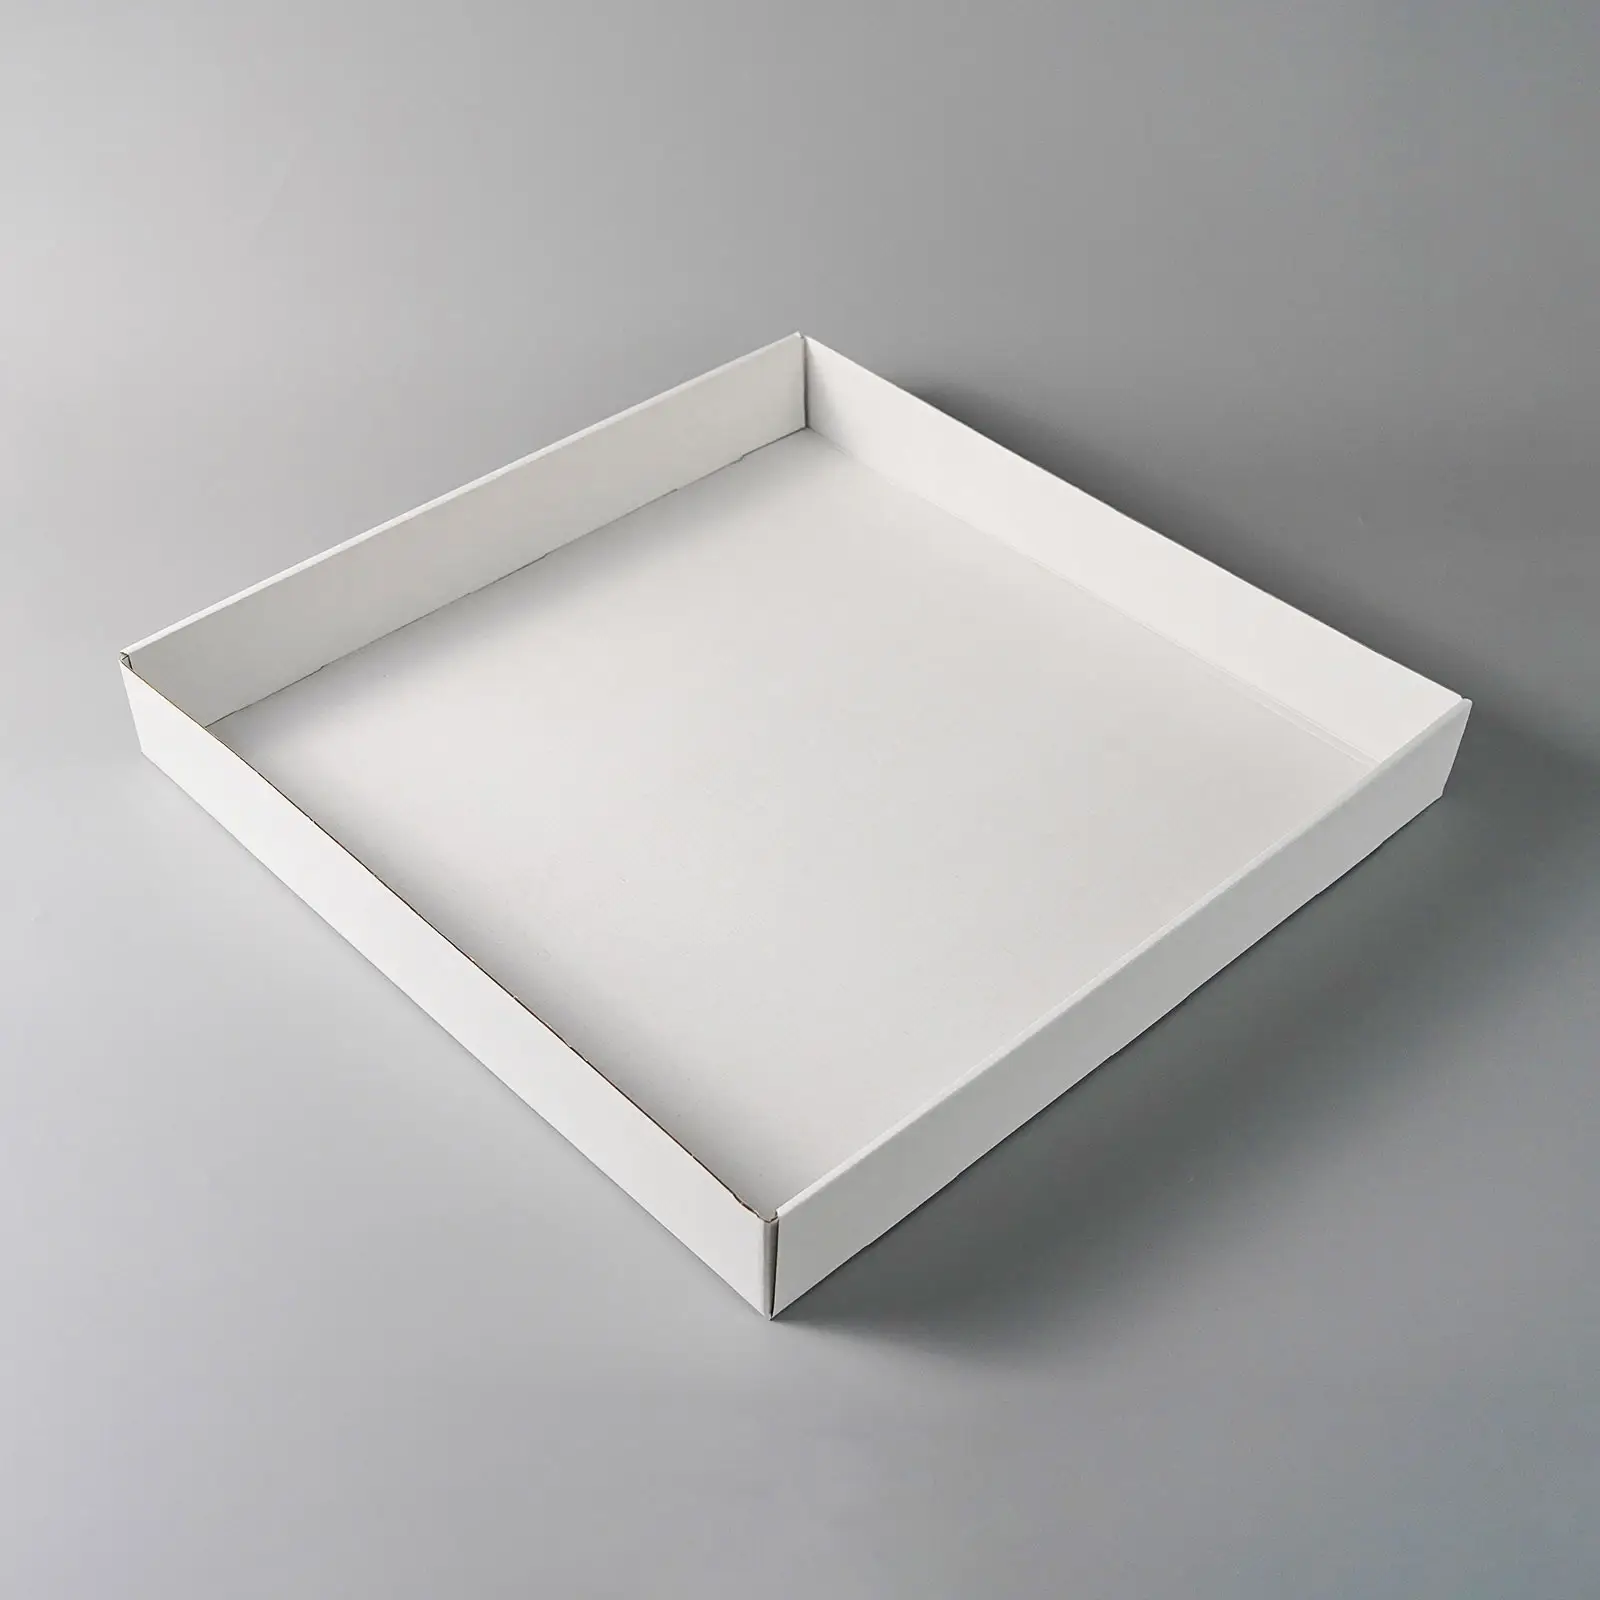 ペストリーボックス付きの白い正方形のケーキボックスと窓付きのベーカリーボックス